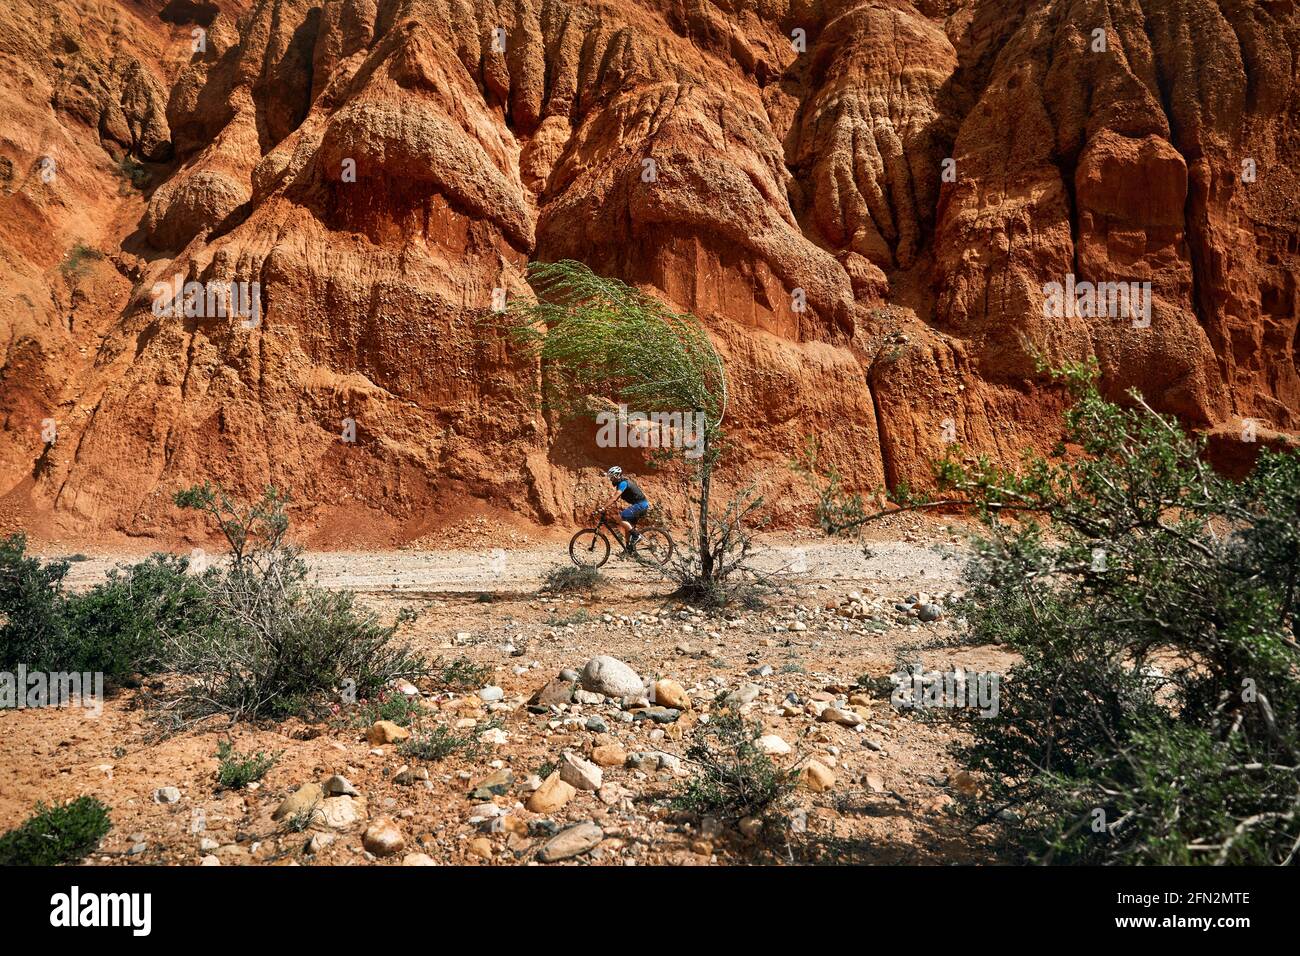 Der Fahrer fährt bei windigem Wetter in Kasachstan mit dem Mountainbike in der Wüstenwand des Canyon in der Nähe des Baumes. Konzept für Extremsport und Outdoor-Erholung. Stockfoto